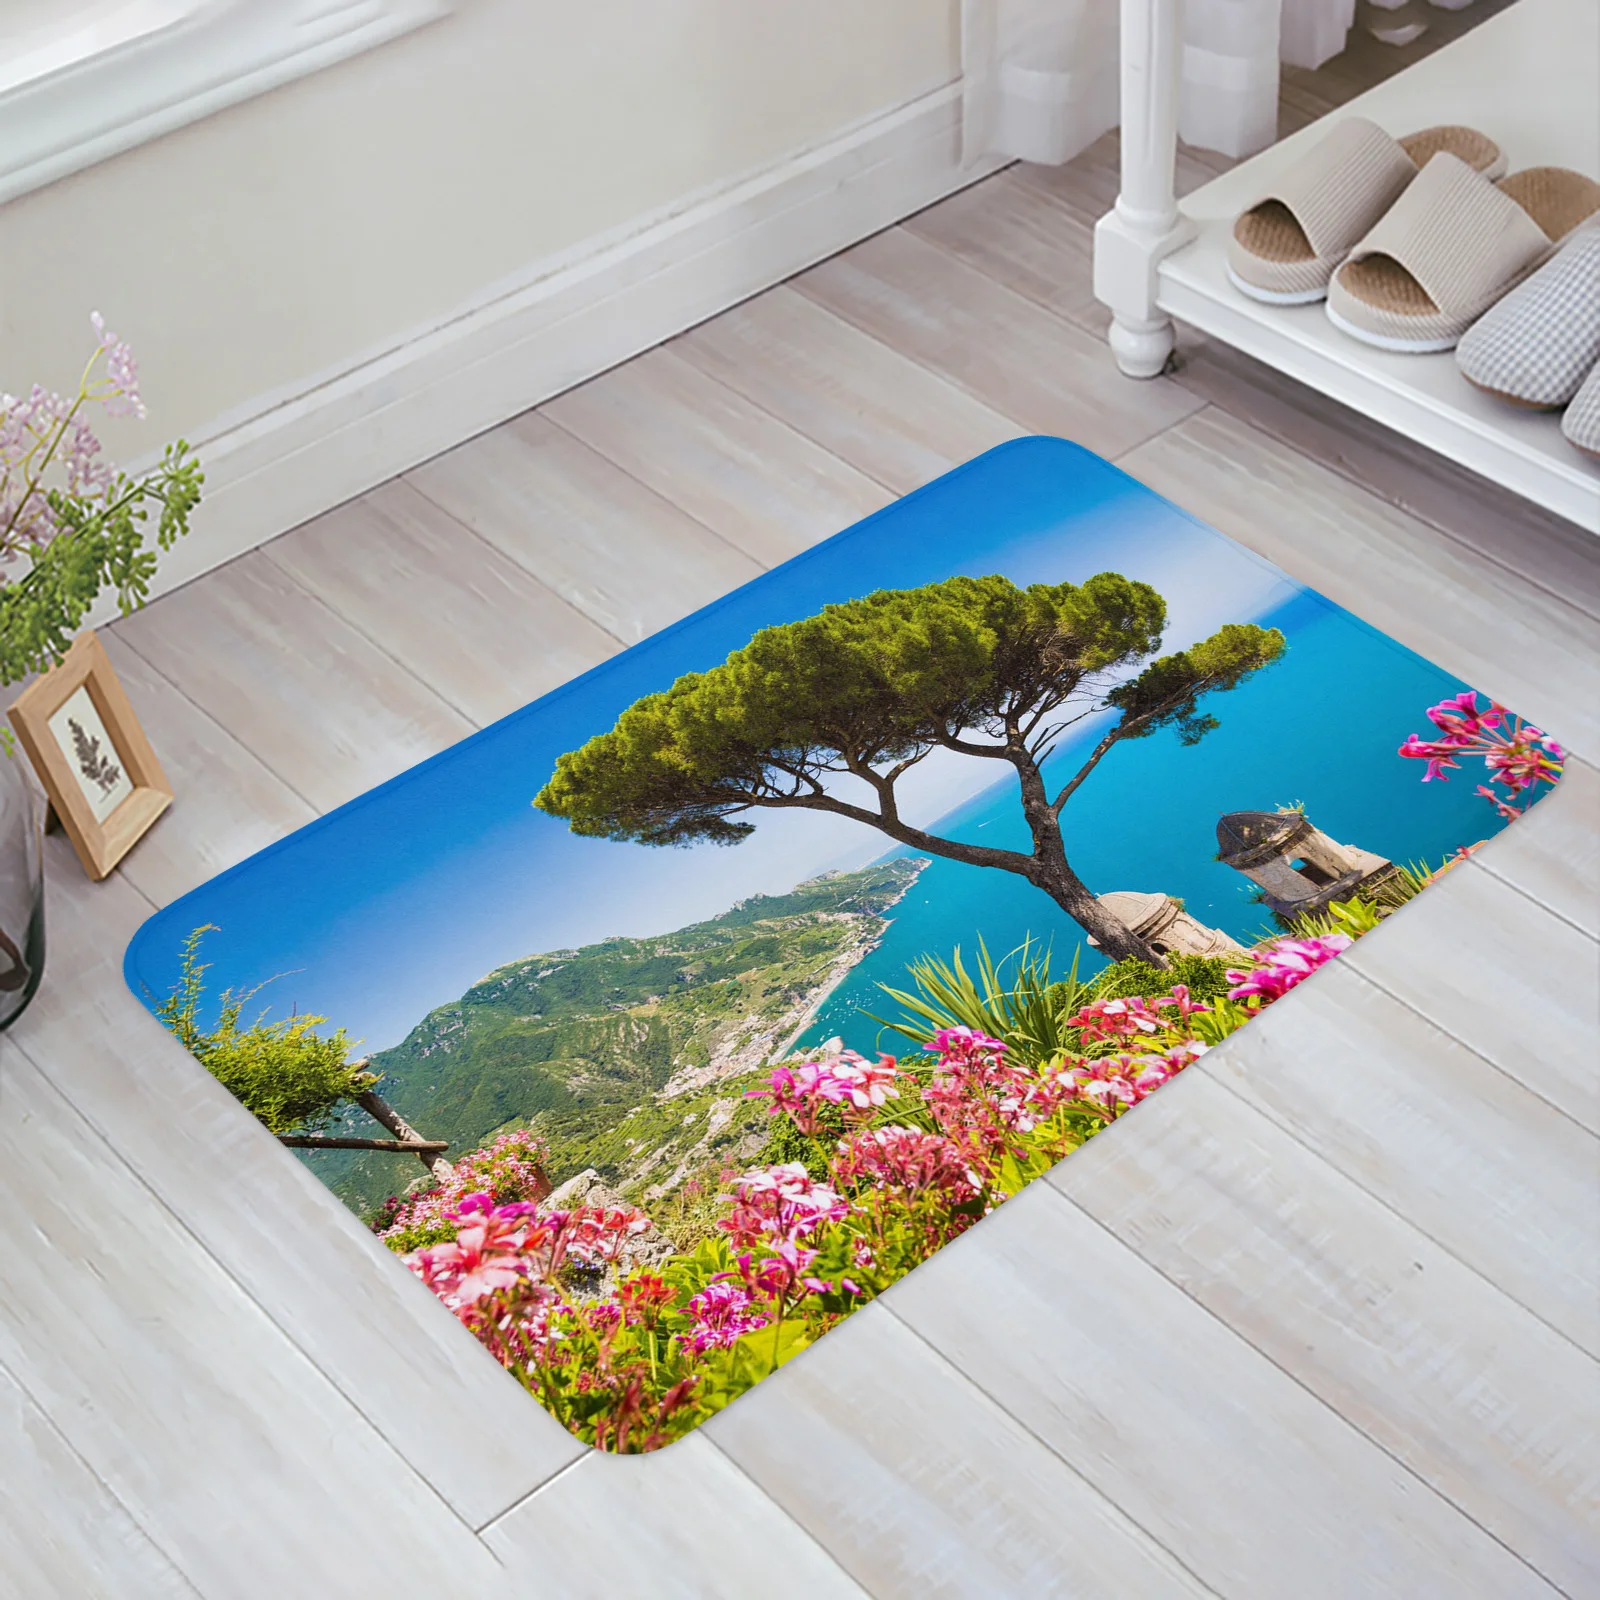 https://ae01.alicdn.com/kf/S8127ff173a22481da0cf81b67bf0f08bj/Garden-Sea-Amalfi-Coast-Floor-Mat-Kitchen-Bedroom-Decor-Carpet-Home-Hallway-Entrance-Doormat-Bathroom-Door.jpg